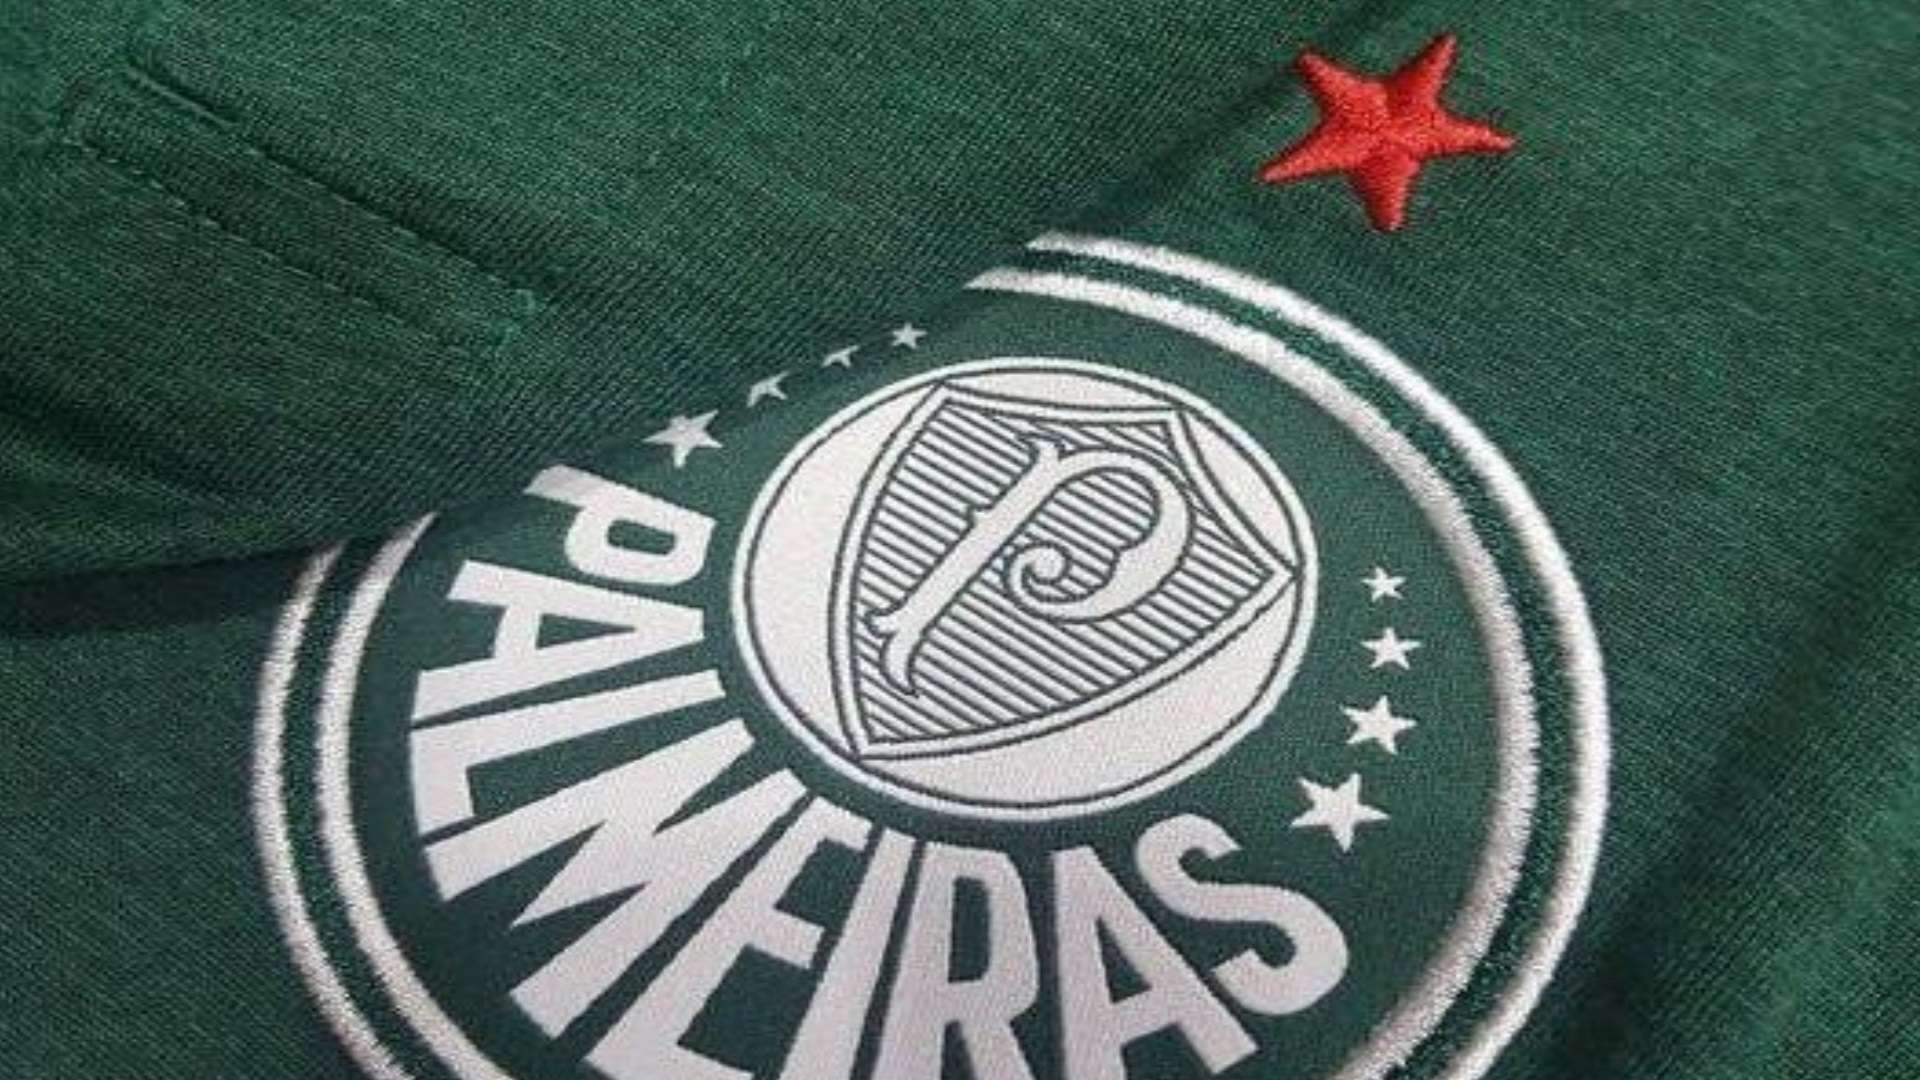 Camisa Palmeiras Adidas 22 03 2018